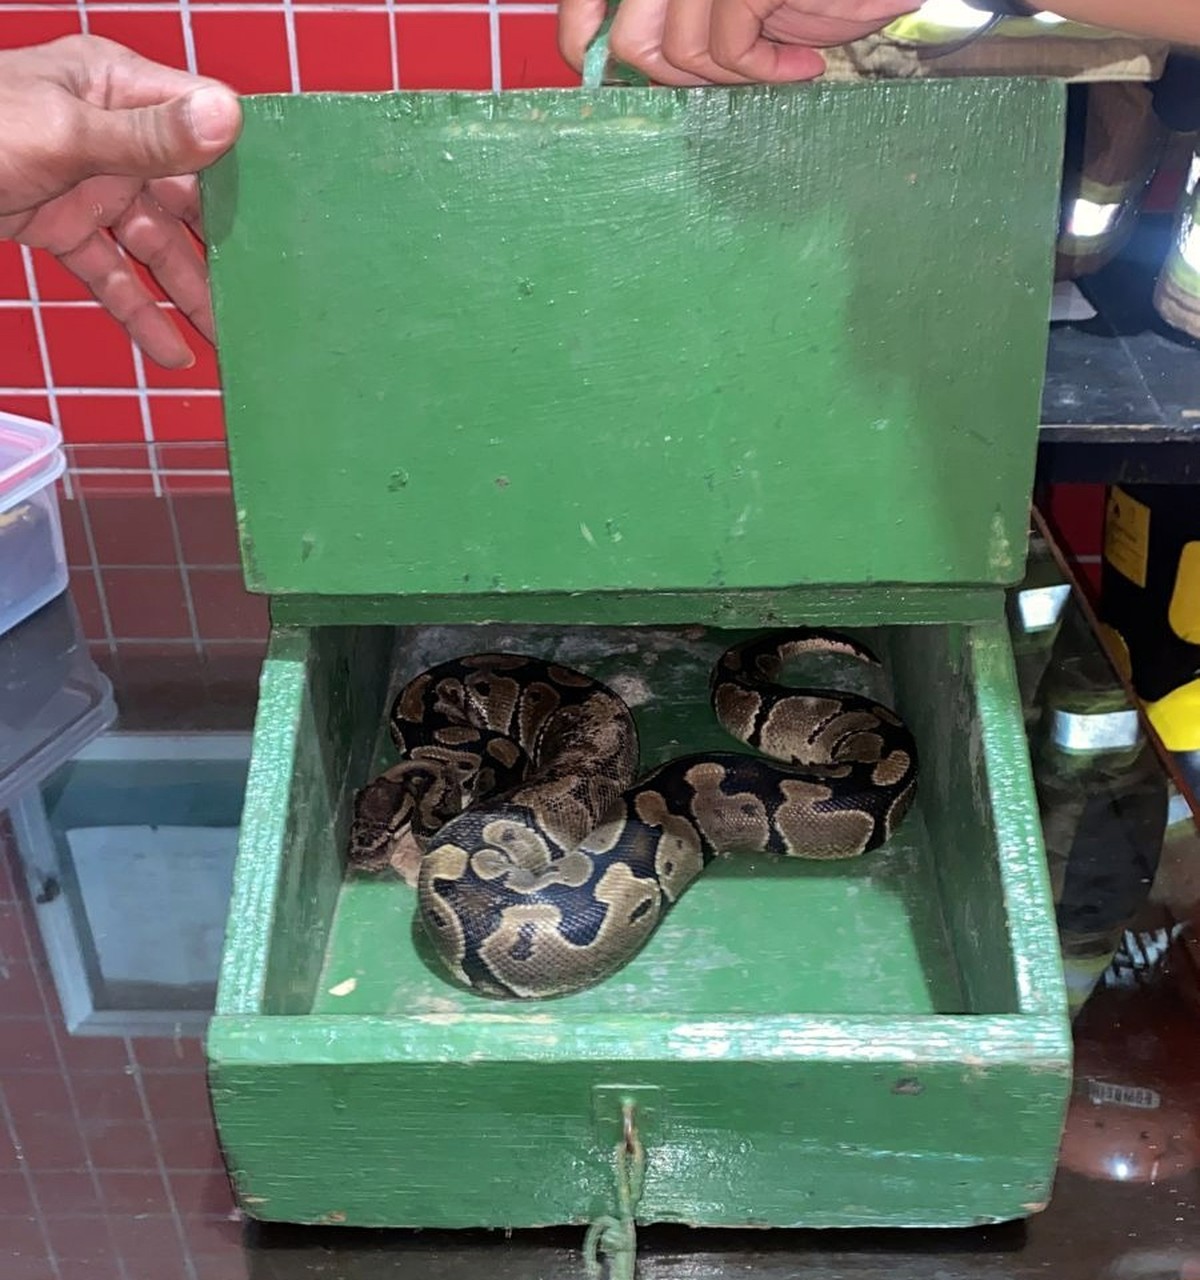 Cobra exótica comum nos EUA é achada em rua do Paraná